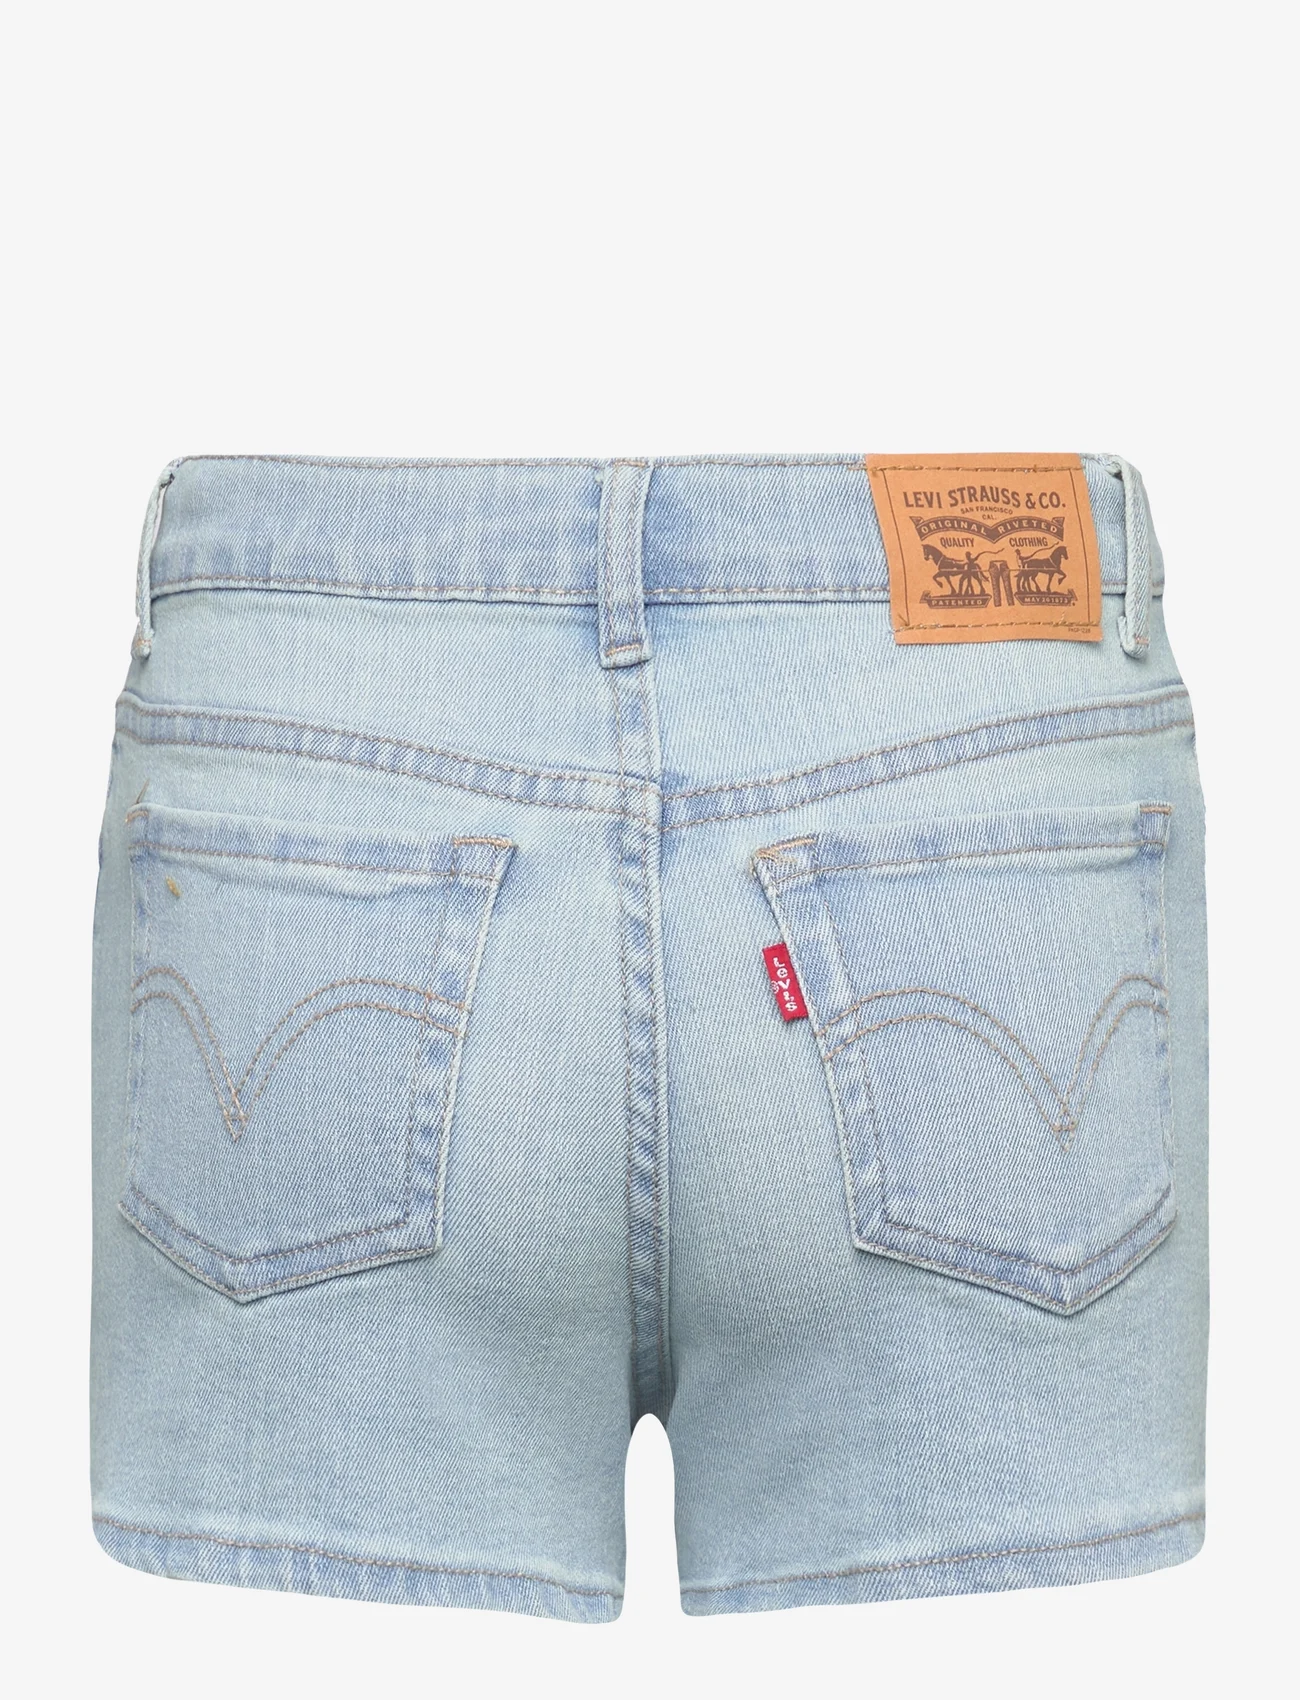 Levi's - Levi's Mini Mom Shorts - jeansowe szorty - blue - 1